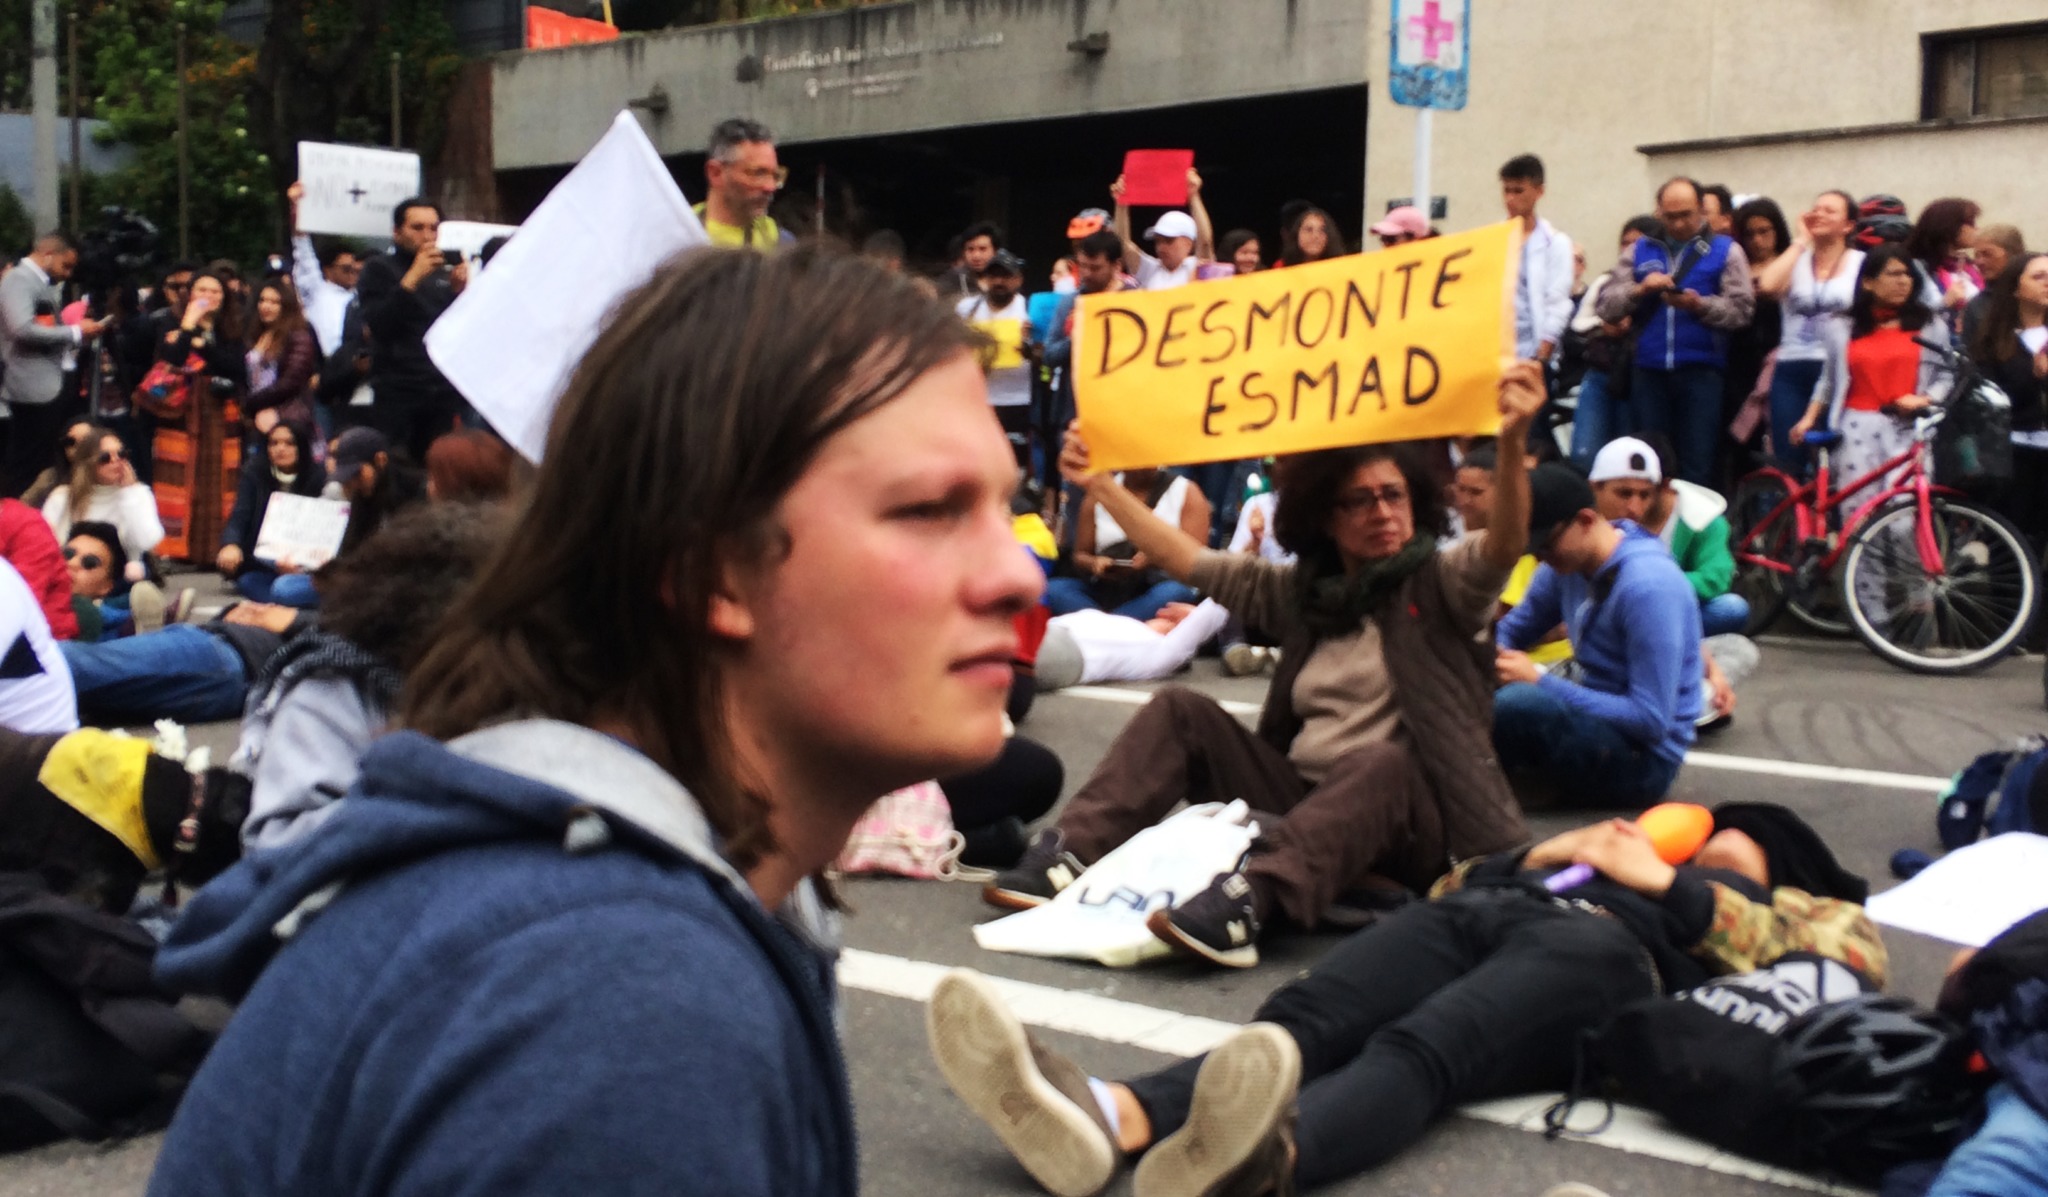 Colombia: Presupuesto para la educación, no más armas ni dinero para la represión